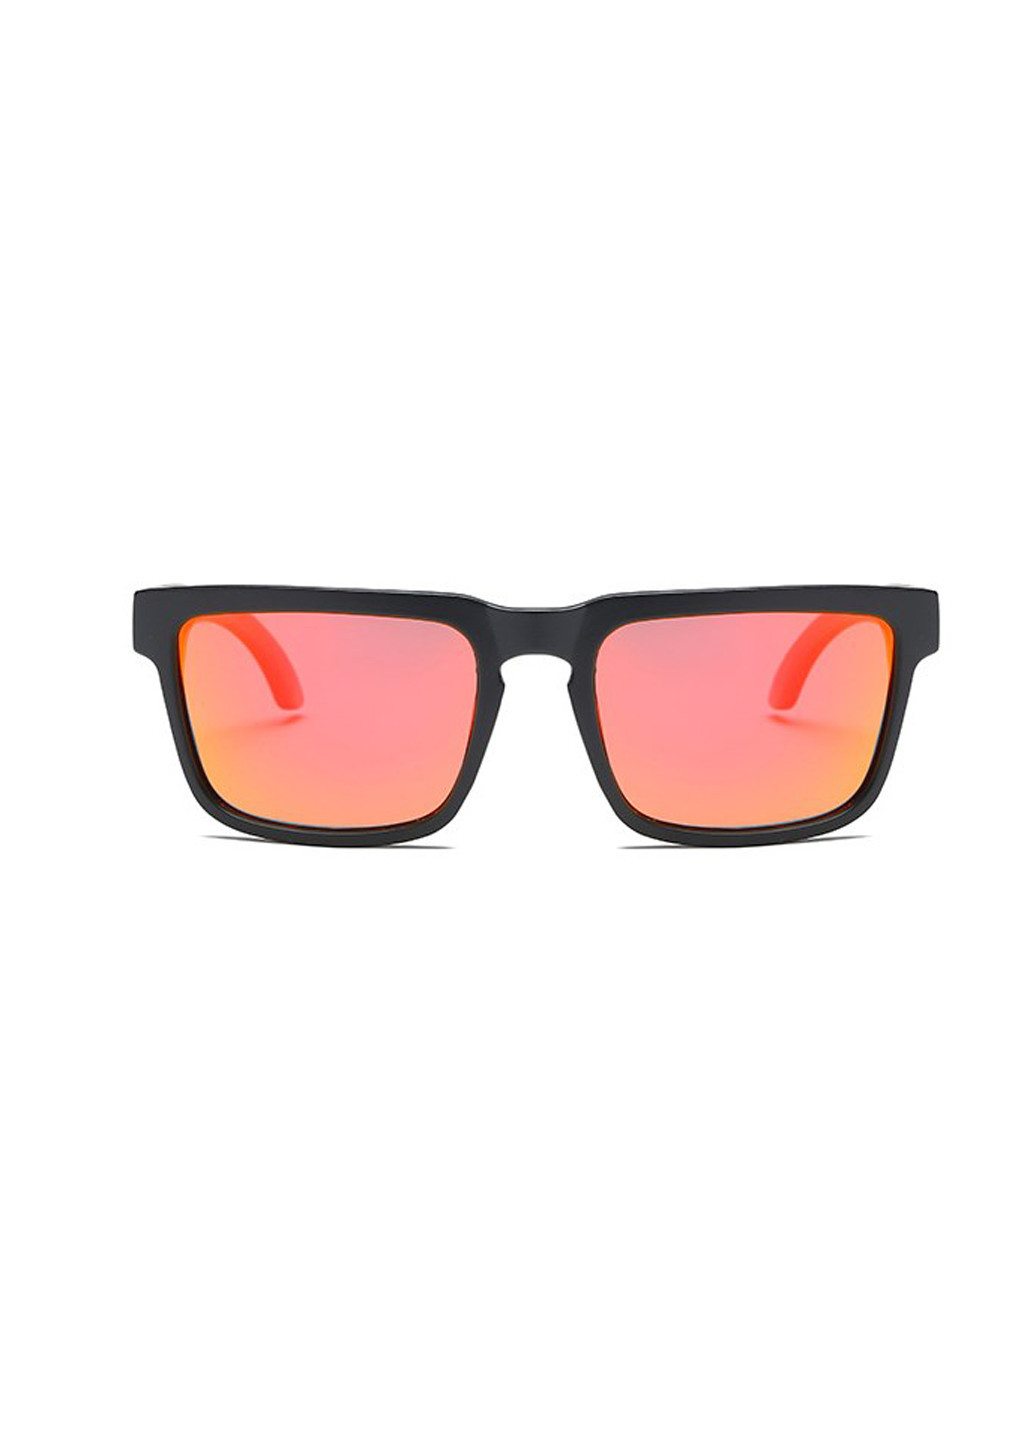 Сонцезахисні окуляри Dubery помаранчеві